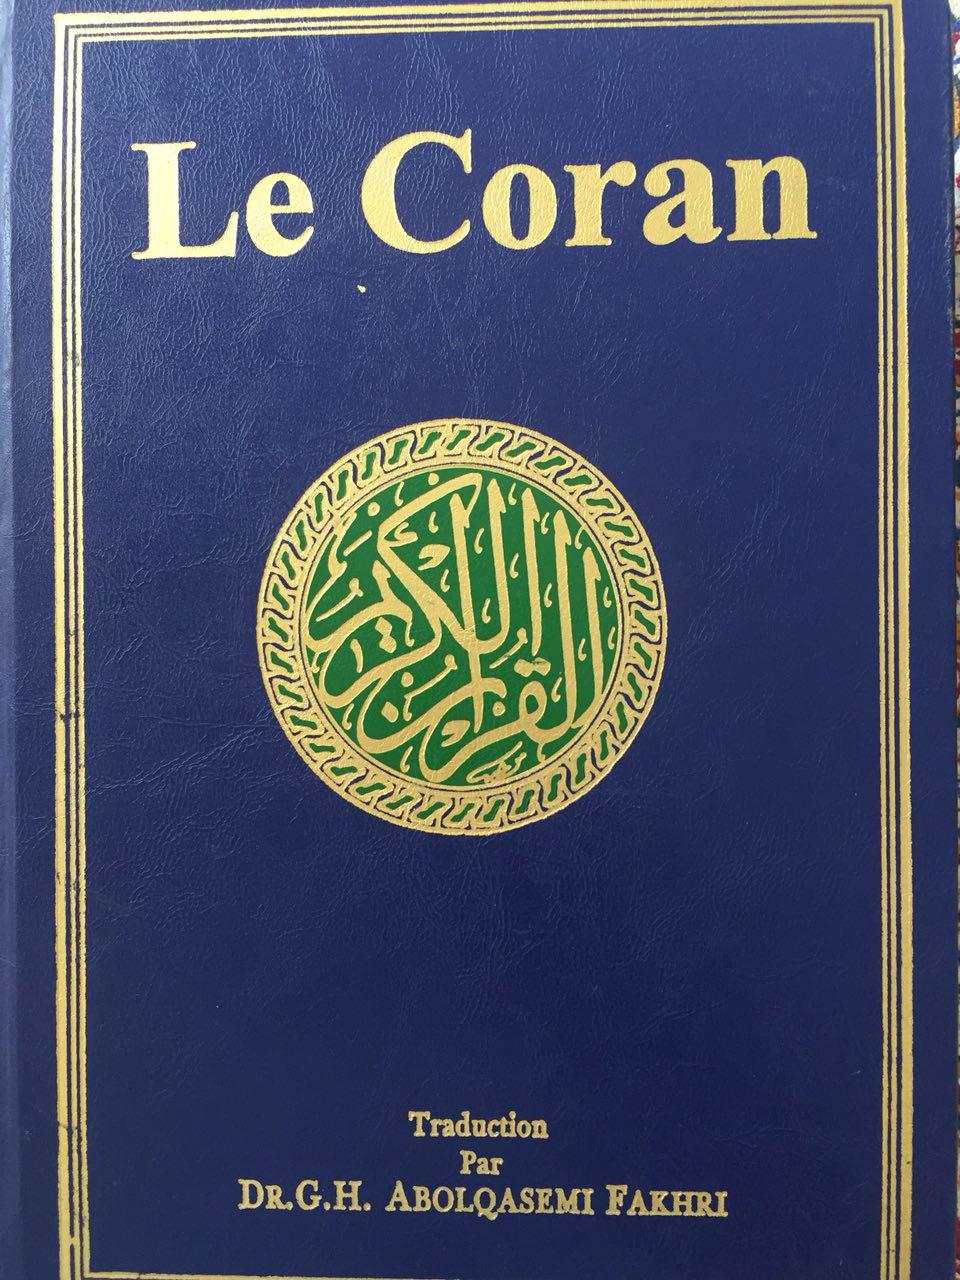 Senegal:successo per traduzione del Corano in francese da parte di autore iraniano